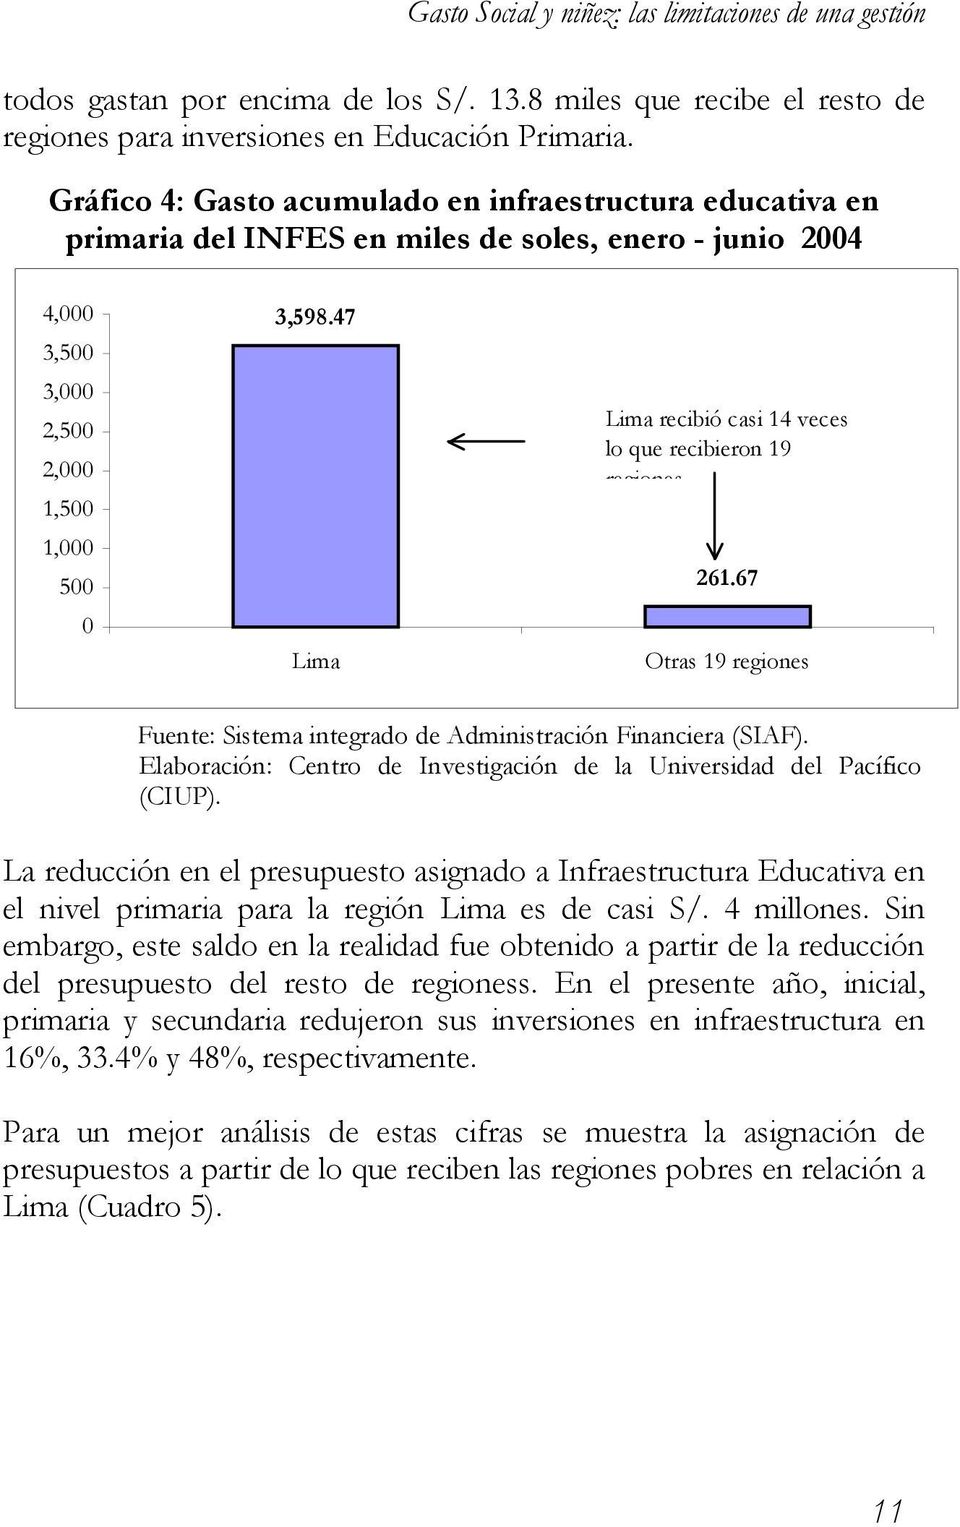 47 Lima Lima recibió casi 14 veces lo que recibieron 19 regiones 261.67 Otras 19 regiones Fuente: Sistema integrado de Administración Financiera (SIAF).